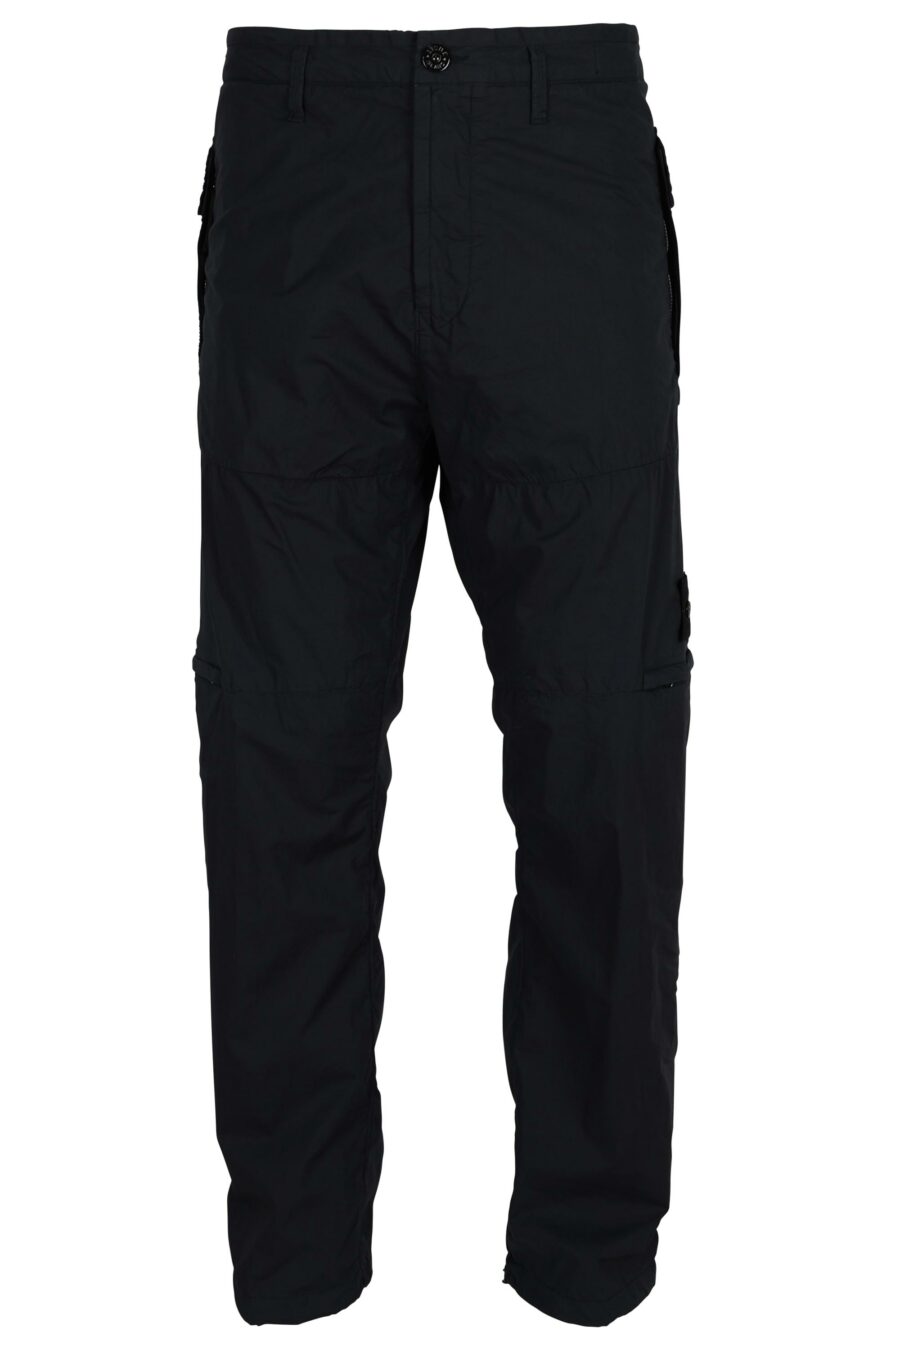 Pantalón azul oscuro "regular" con logo parche brújula - 8052572954948